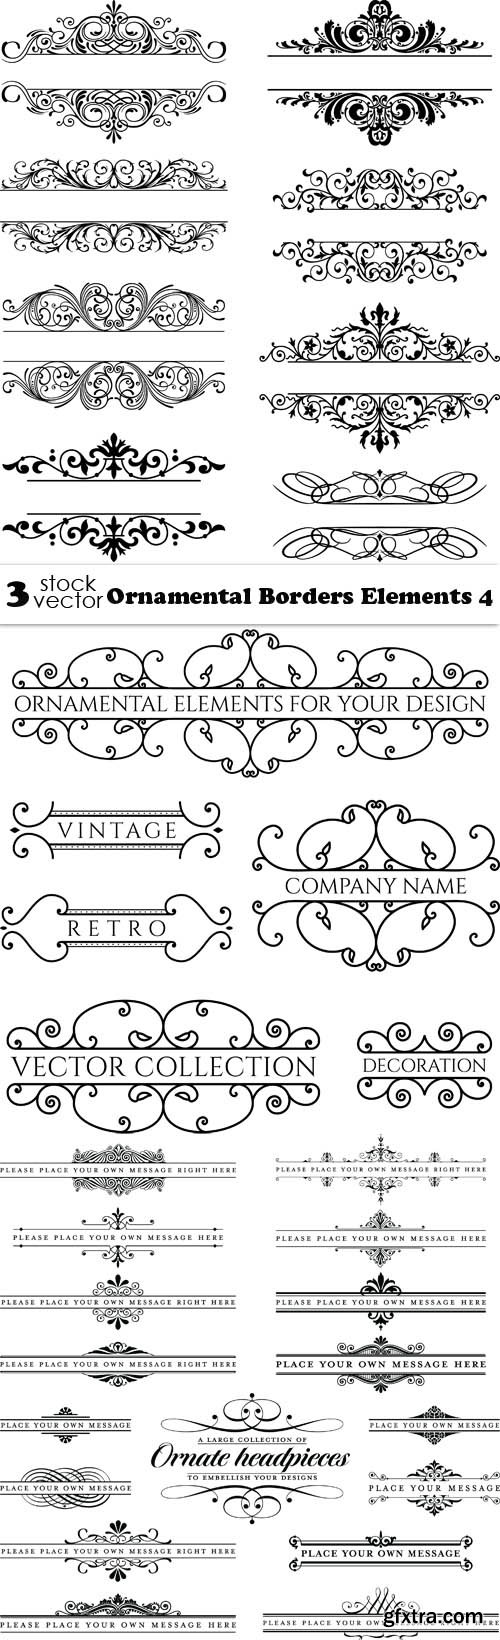 Vectors - Ornamental Borders Elements 4